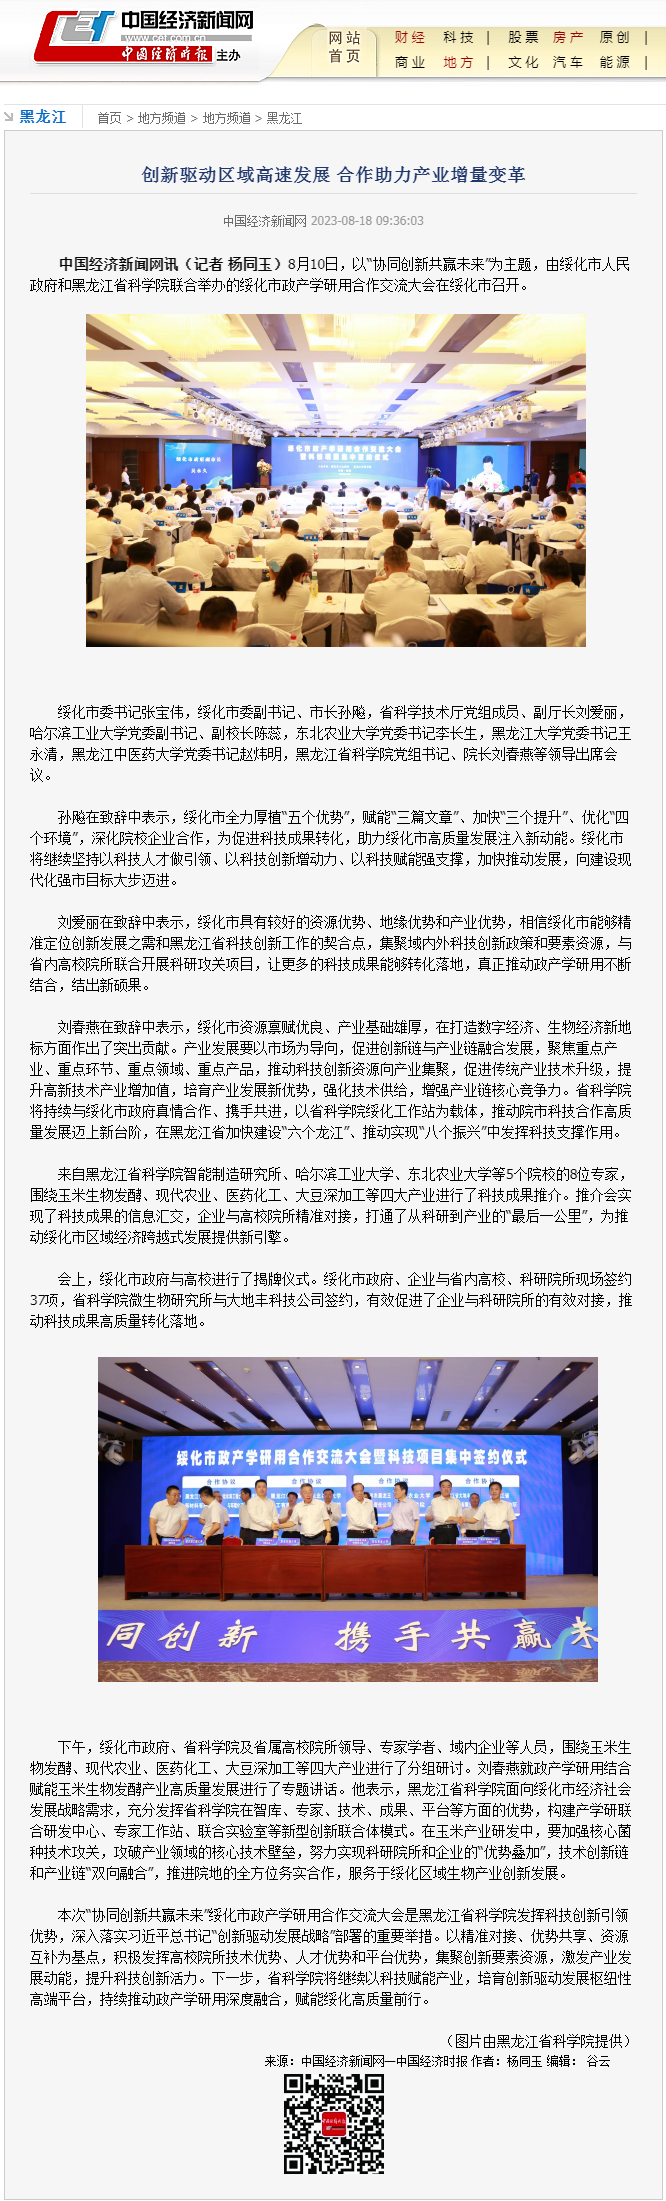 创新驱动区域高速发展 合作助力产业增量变革--黑龙江--中国经济新闻网.png